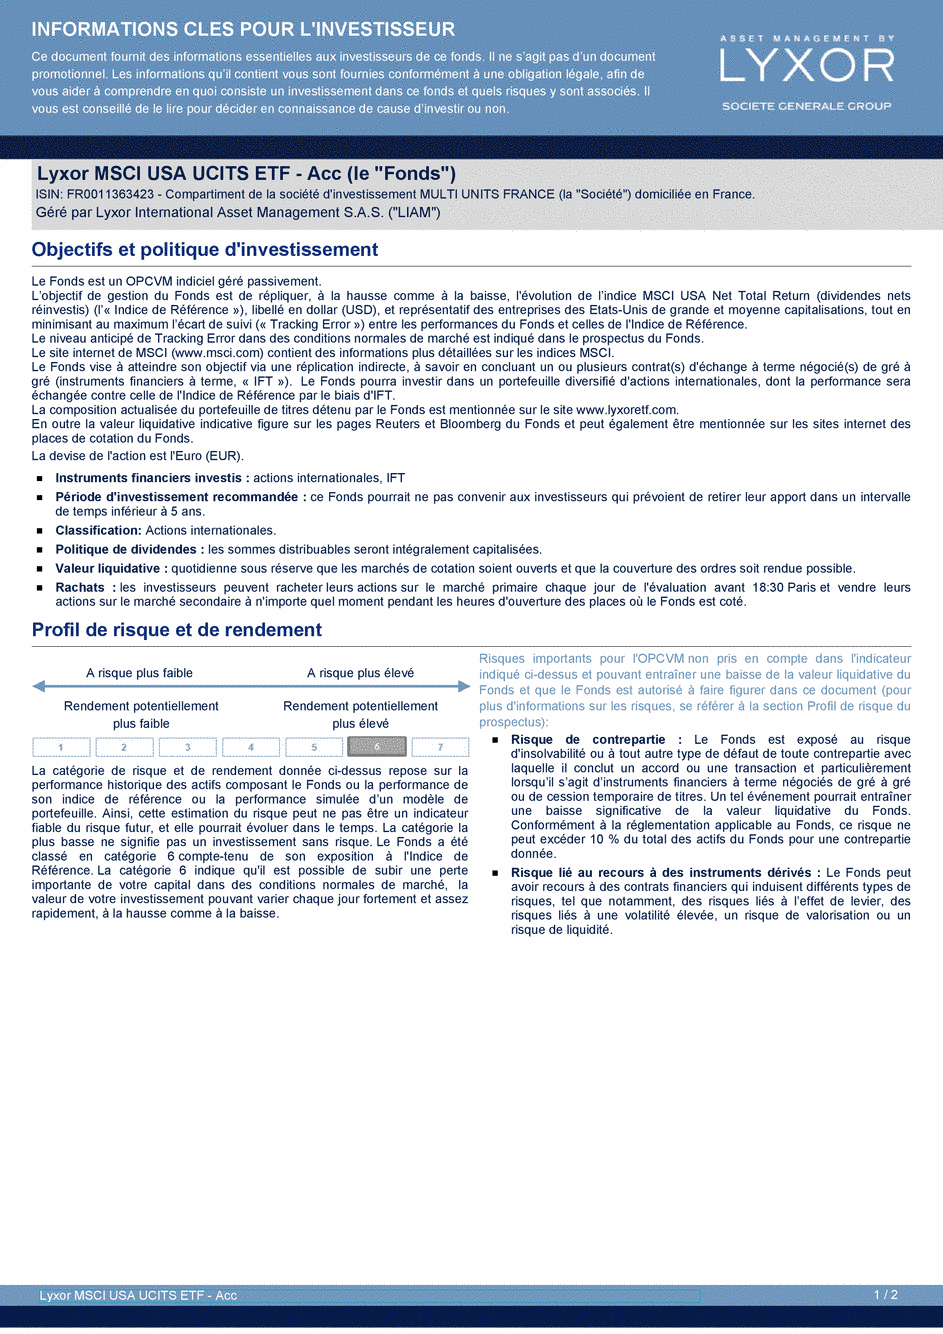 DICI Lyxor MSCI USA UCITS ETF - Acc - 19/02/2021 - Français